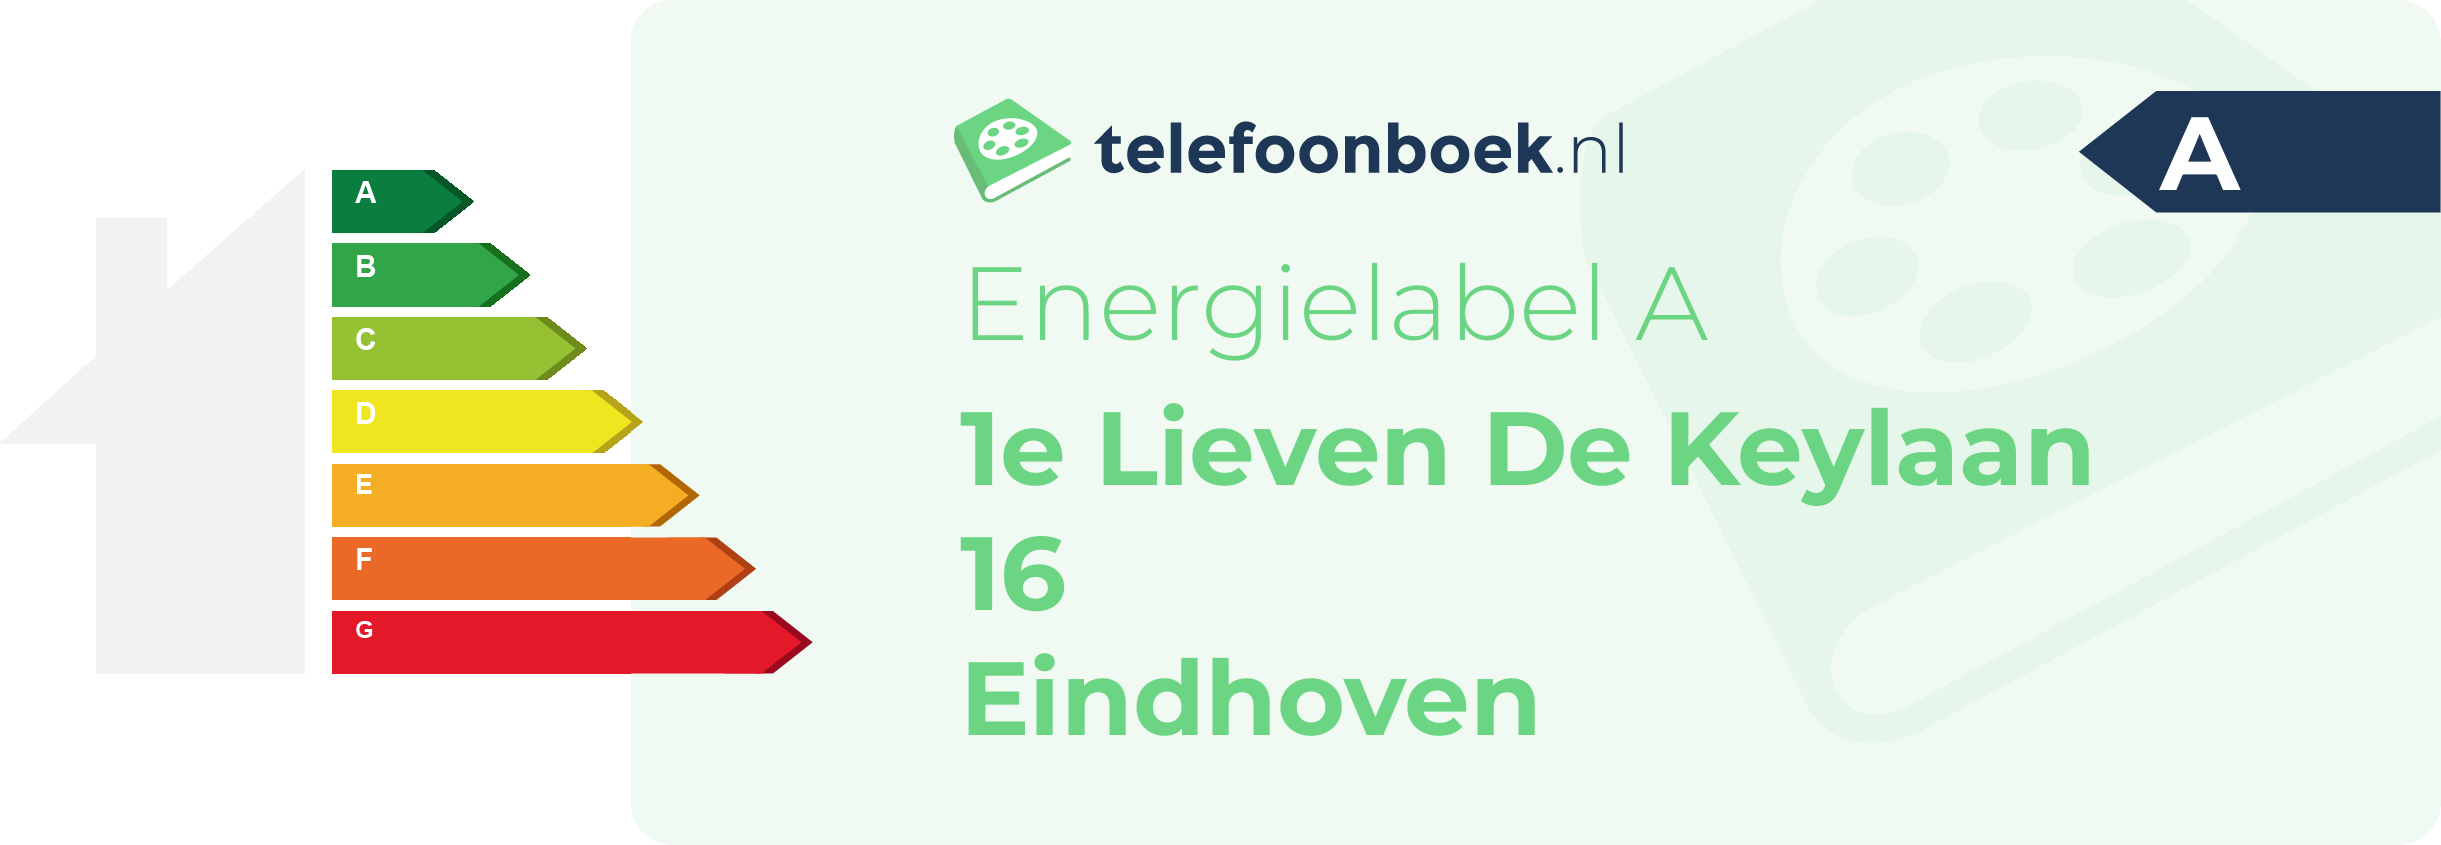 Energielabel 1e Lieven De Keylaan 16 Eindhoven